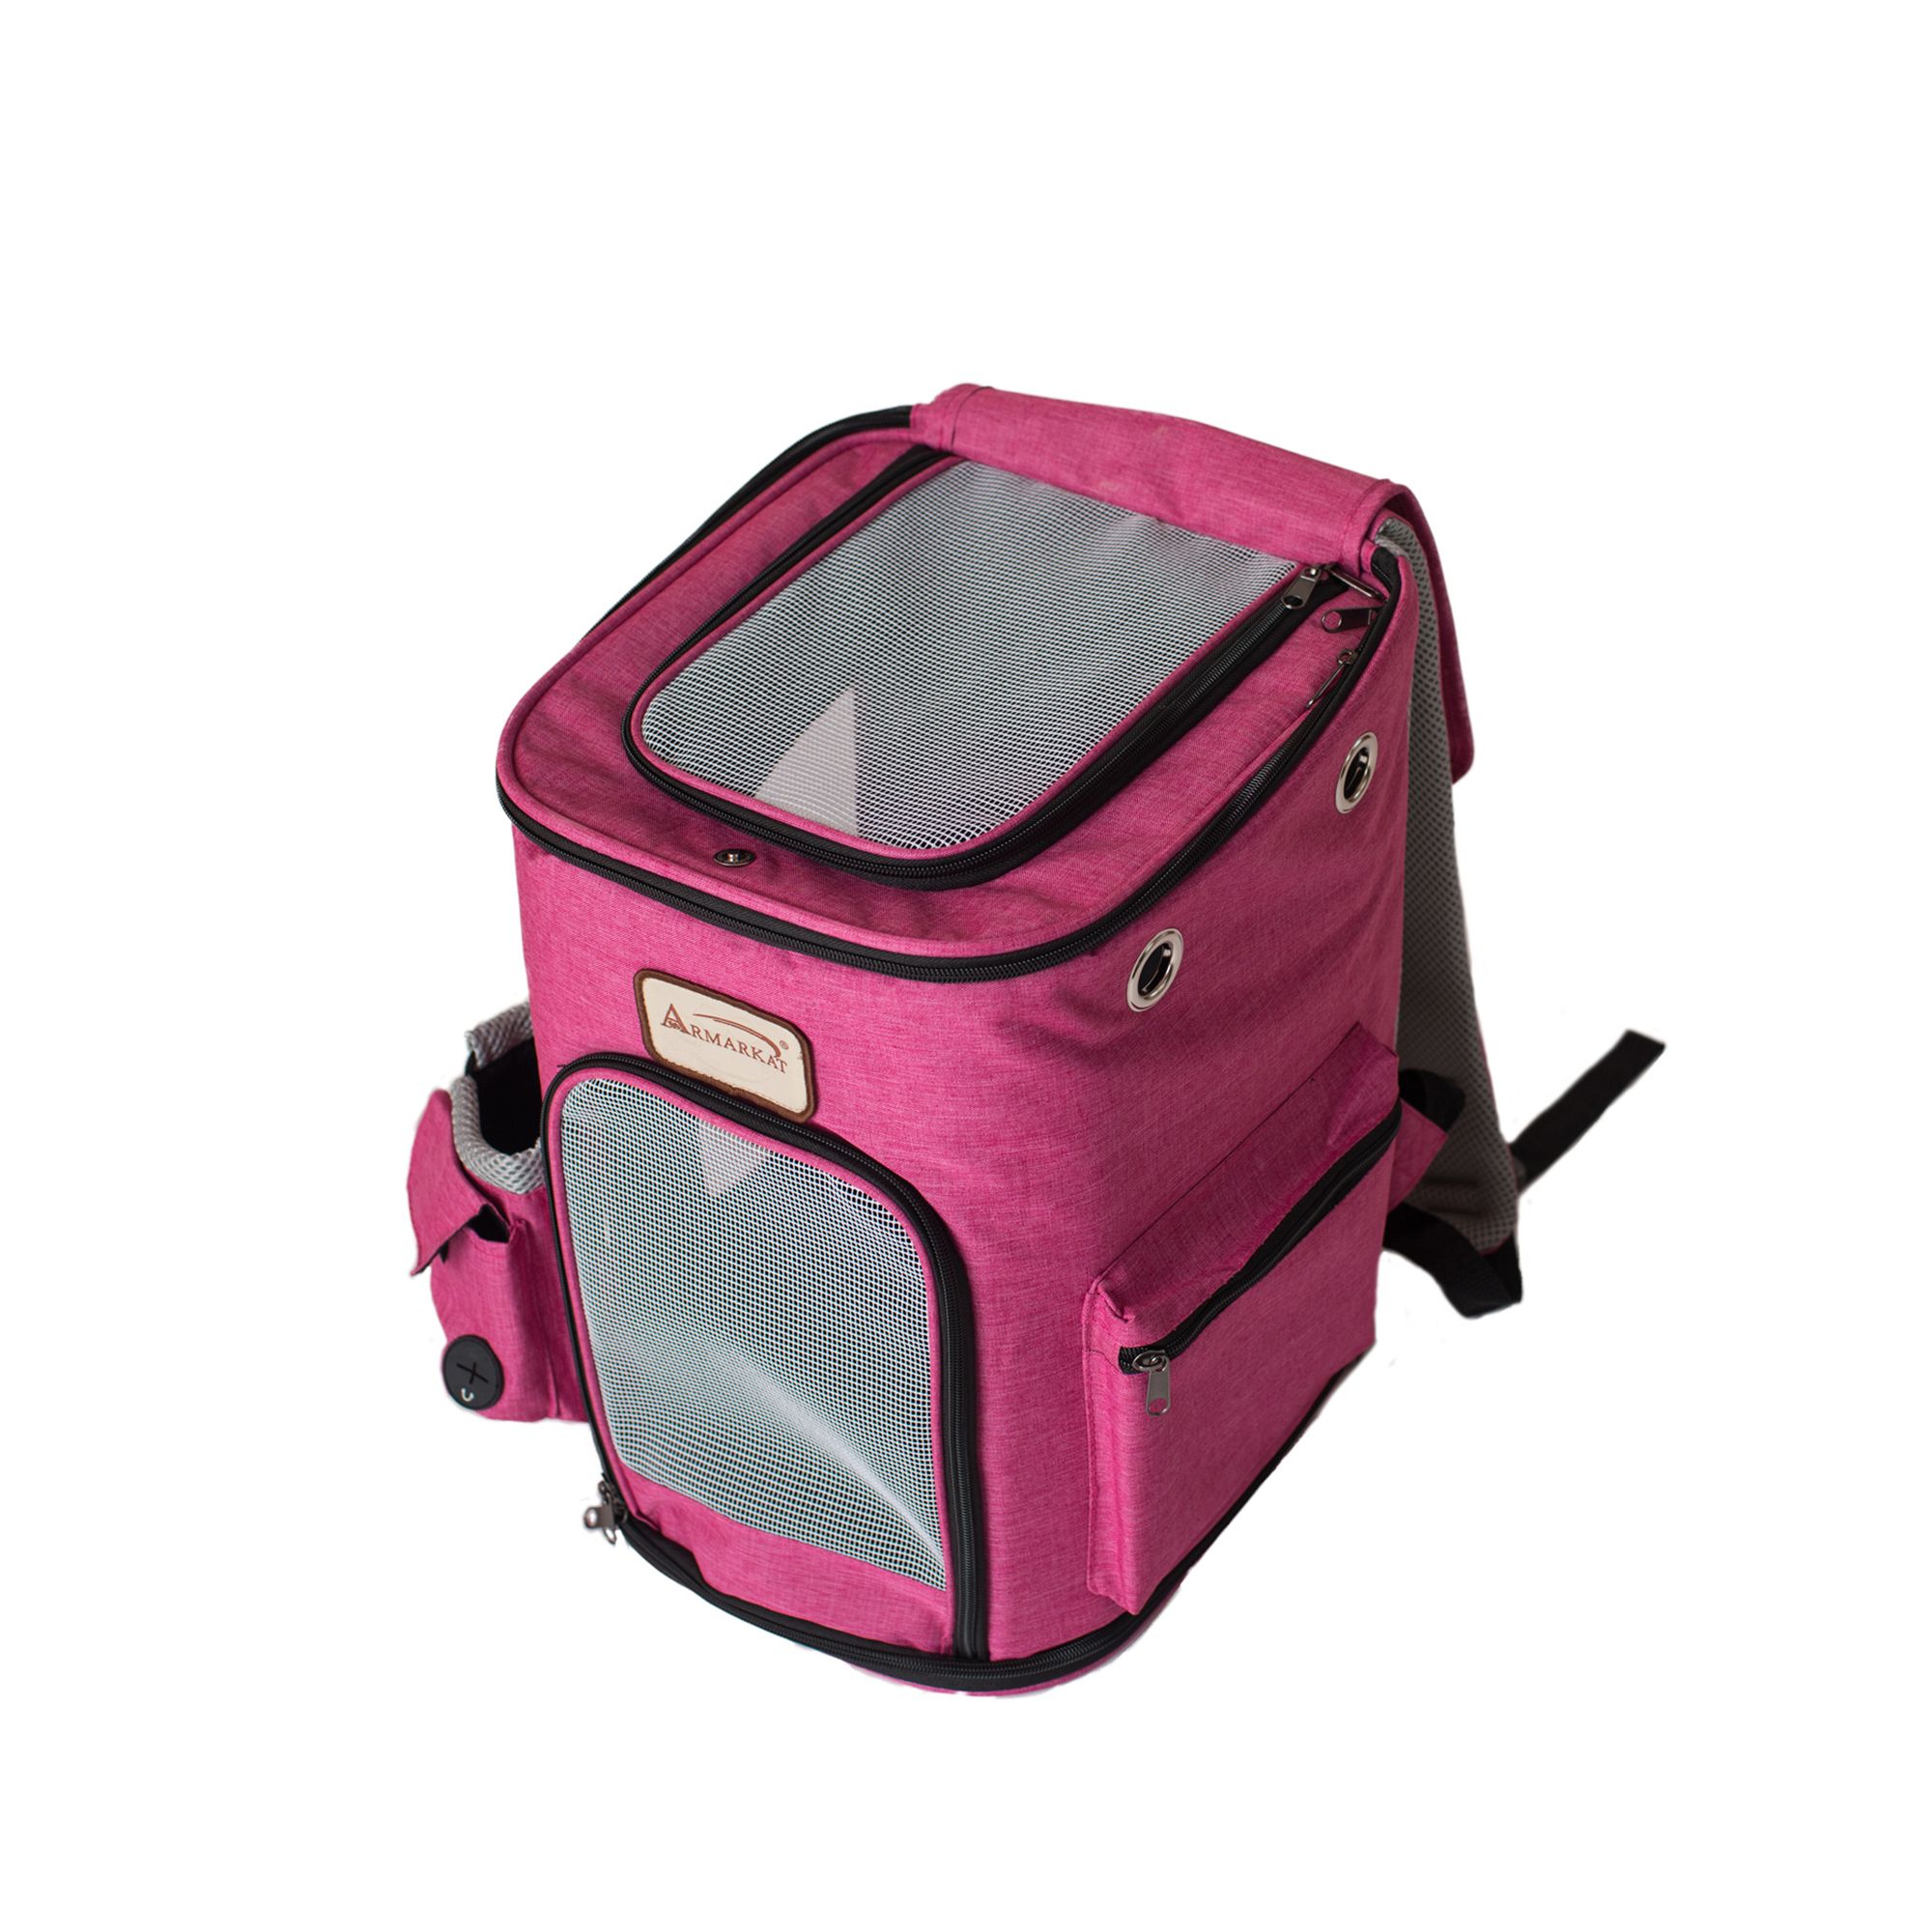 Arkmarkat Backpack Pet Carrier for Dog or Cat